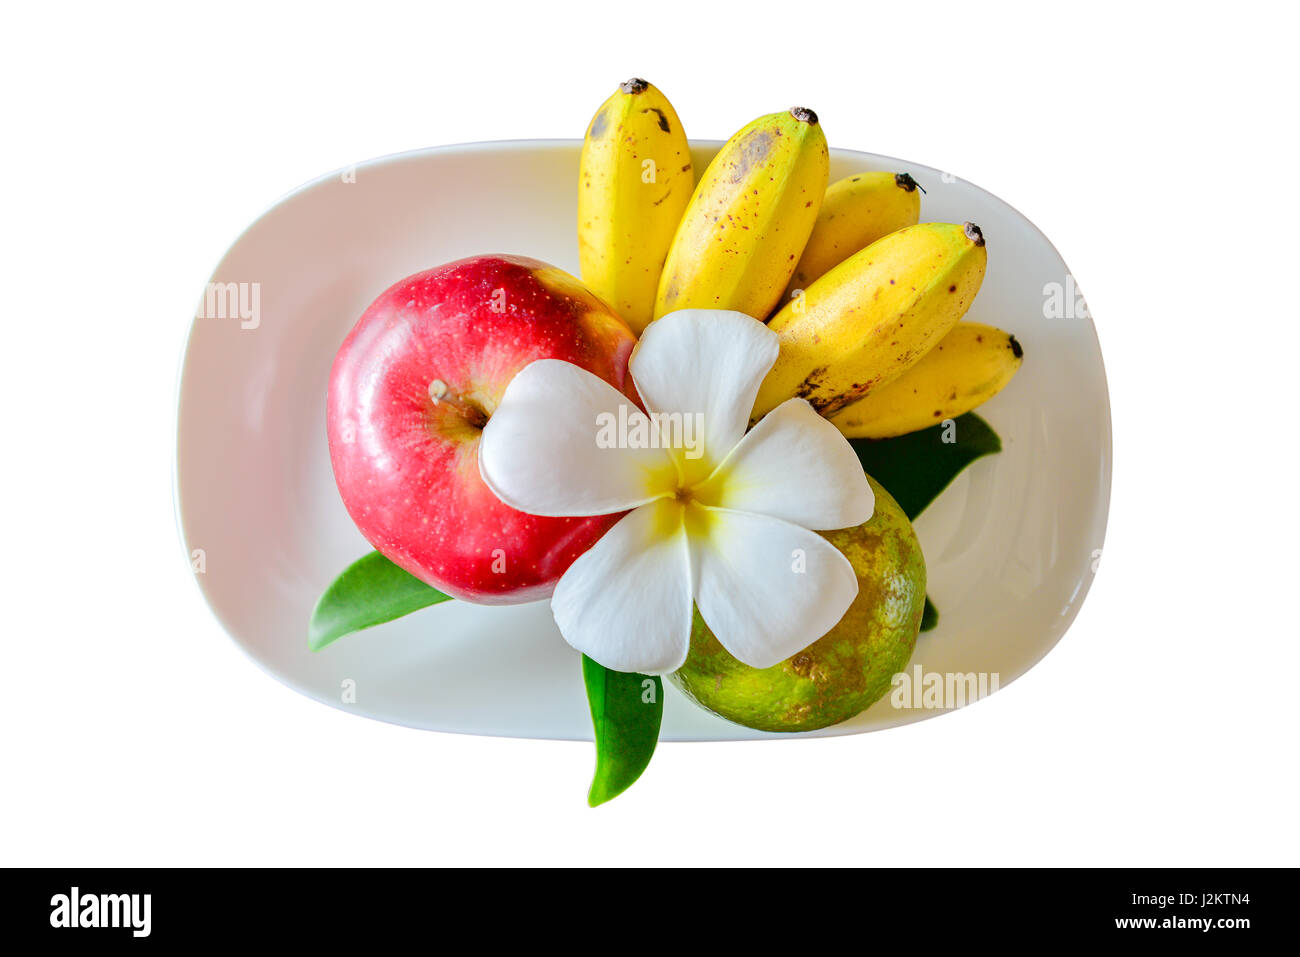 Les pommes et les bananes sur un plat blanc, isolé sur fond blanc. Vue de dessus, chemins de détourage inclus Banque D'Images